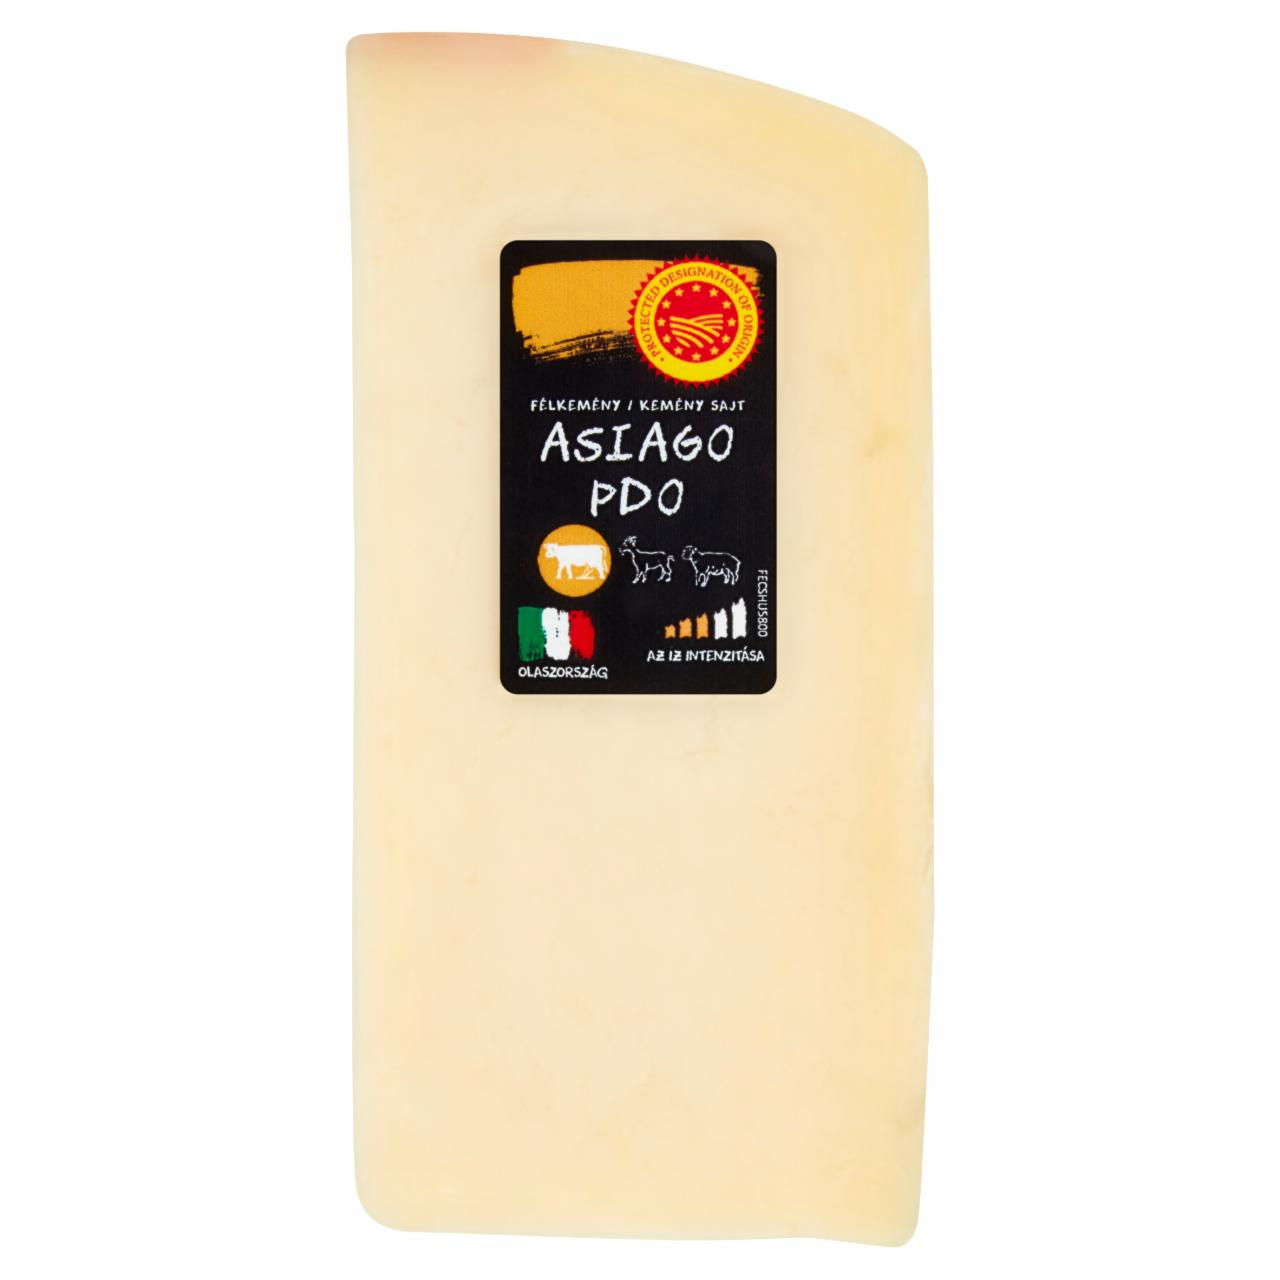 Képek - Asiago félkemény/kemény sajt